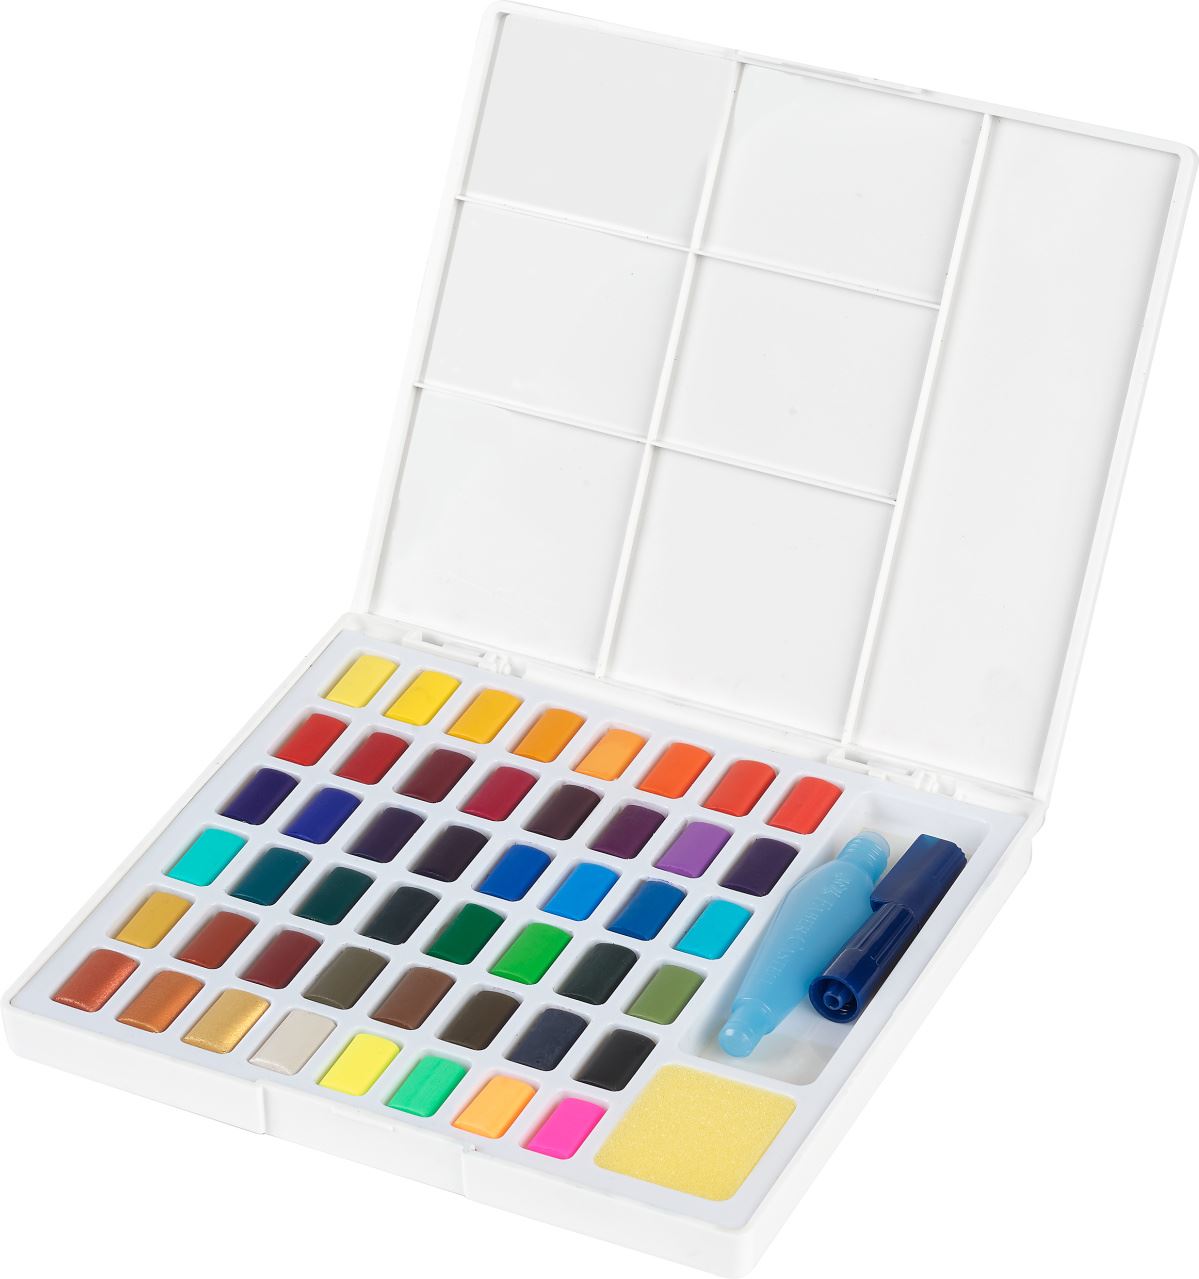 Faber-Castell - Akvarelové barvy, plastová paleta 48 ks